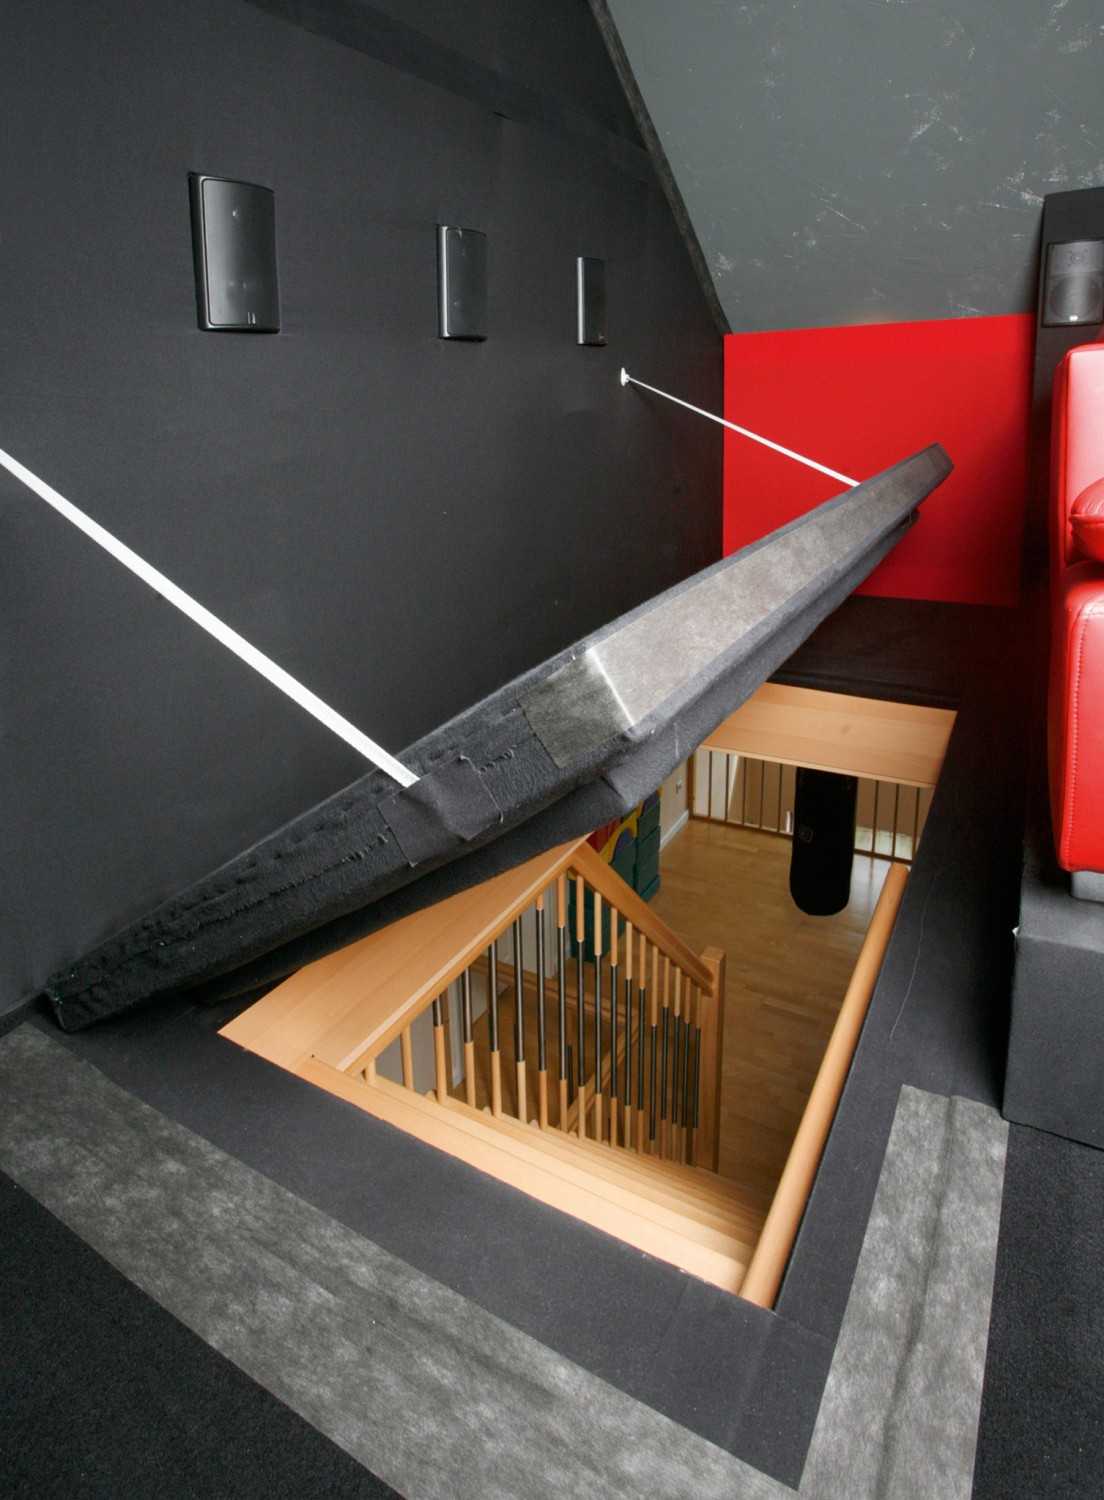 Ratgeber LESERKINO (12) Nice Surprise: 3D-Dachbodenkino mit Suchtfaktor, ein Klanghammer - News, Bild 4